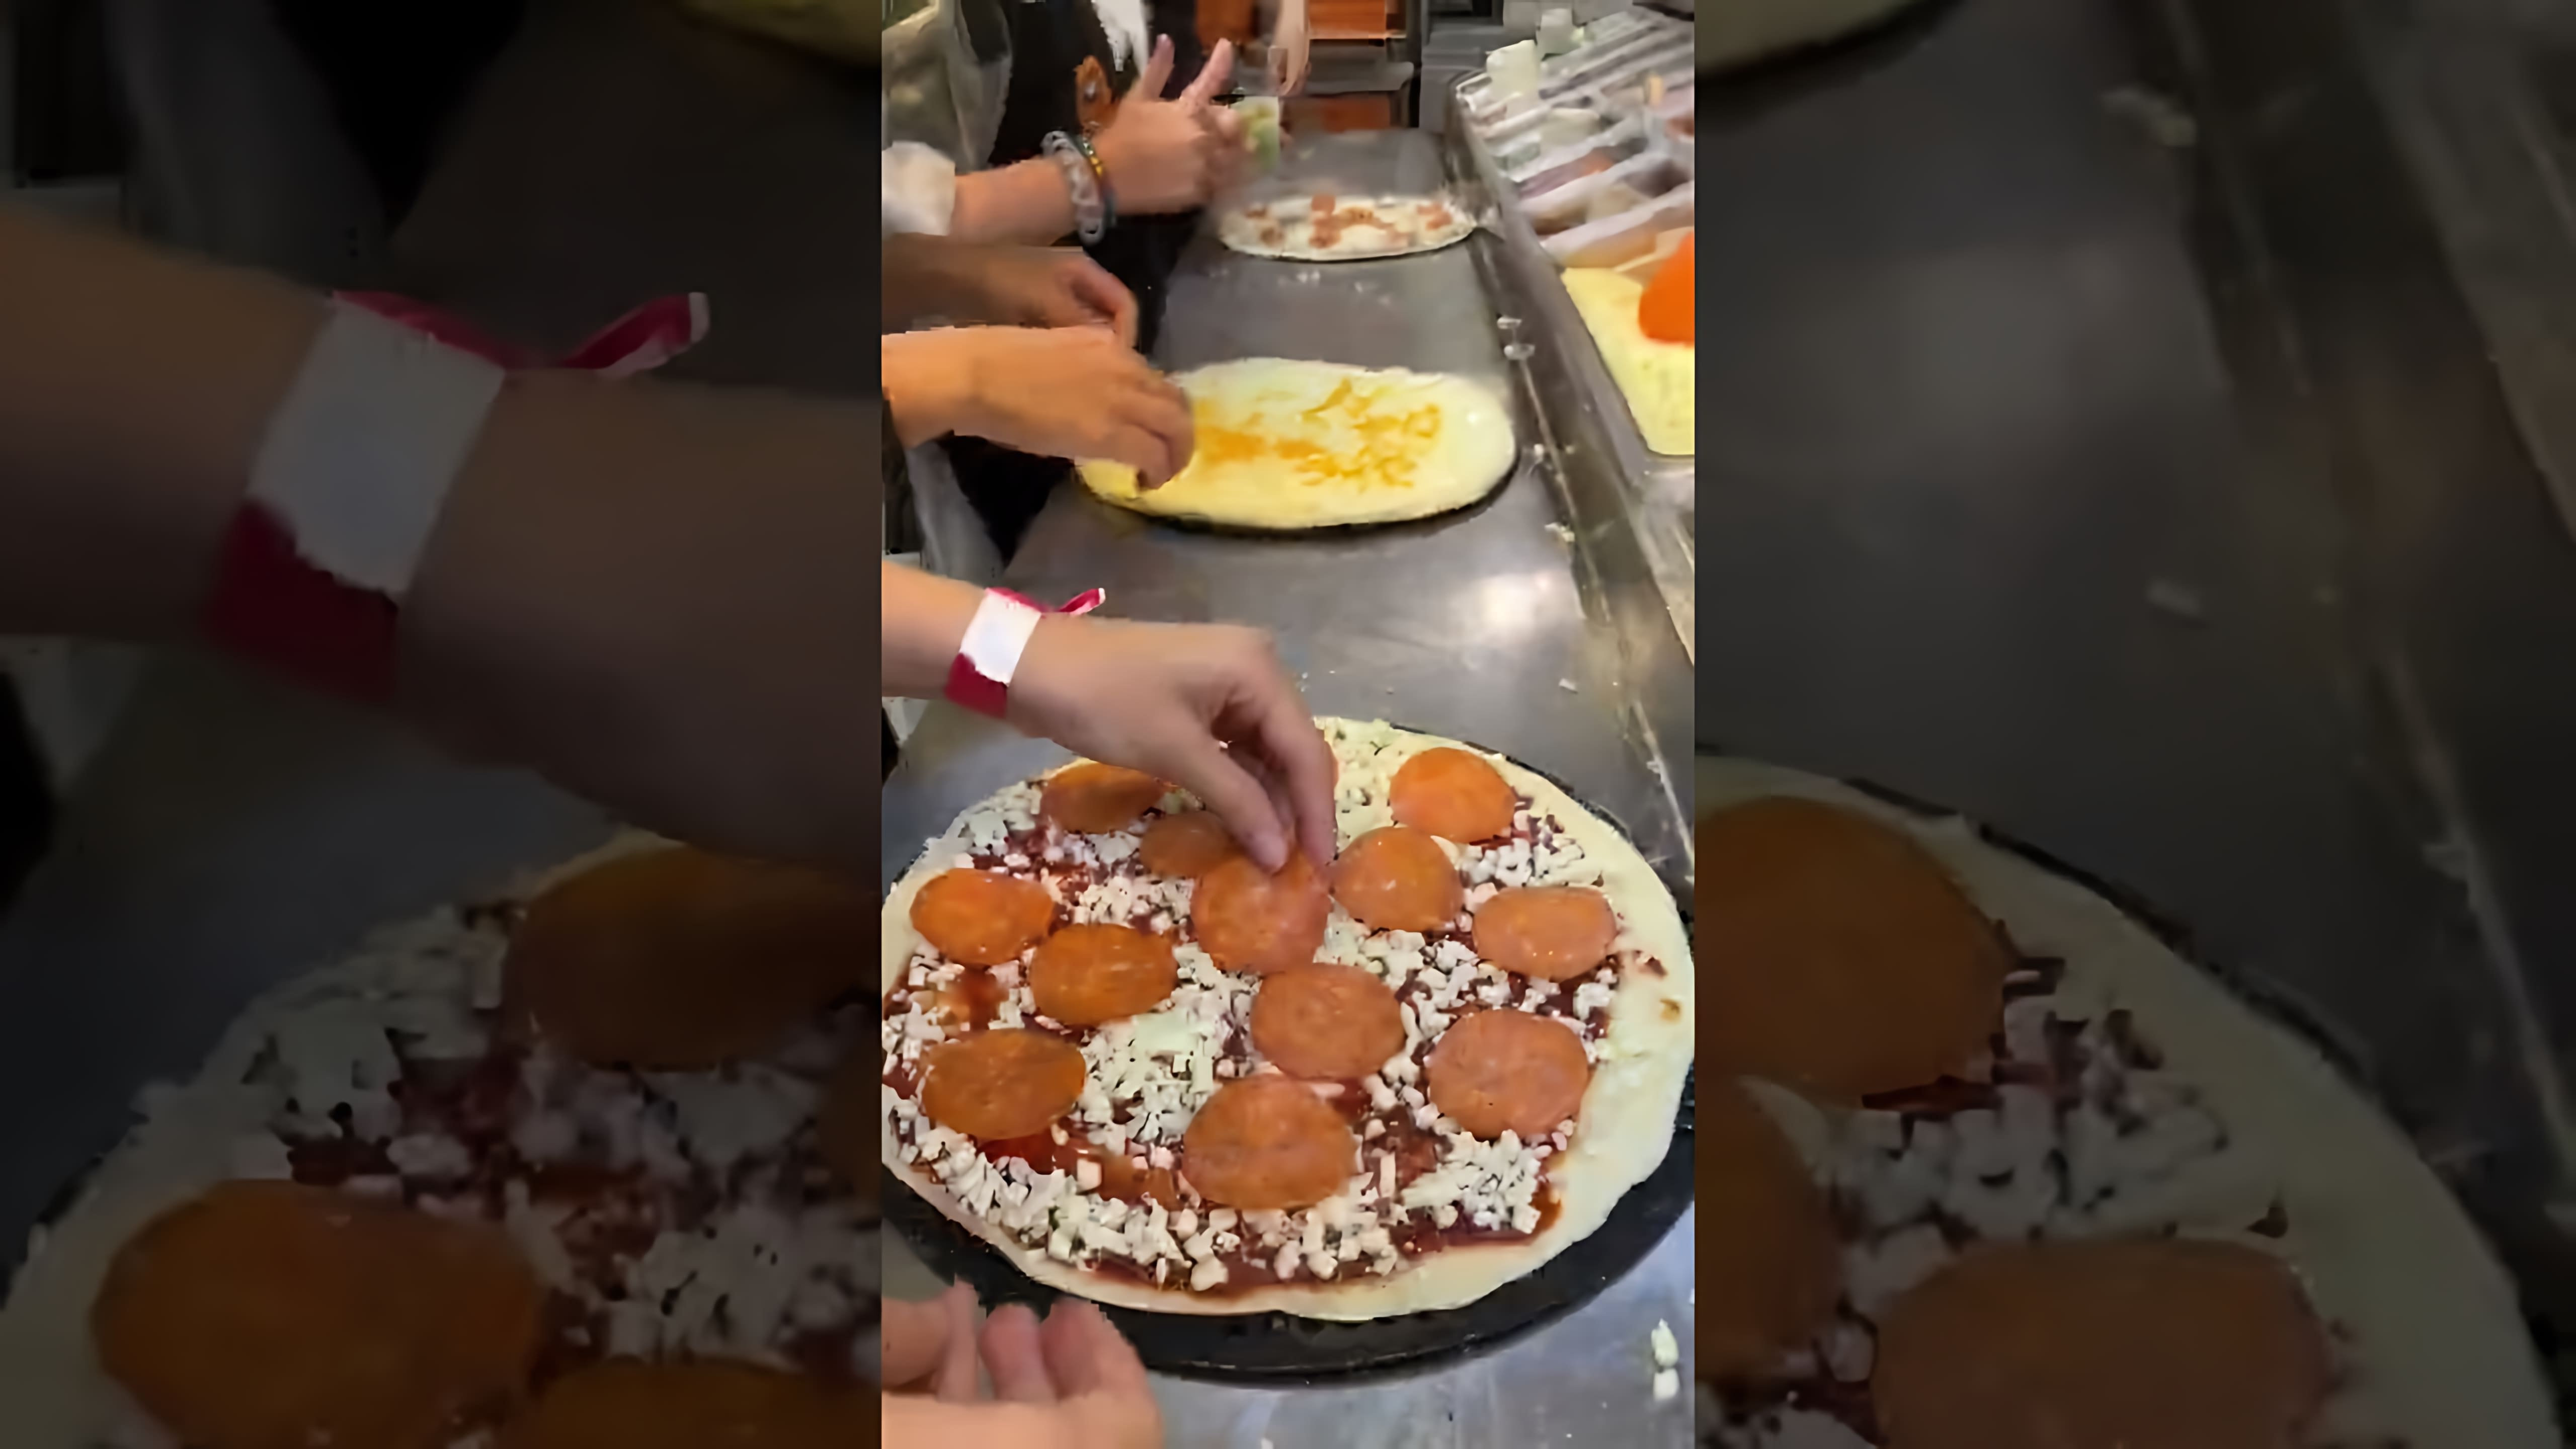 В этом видео мы видим, как проходит бесплатный мастер-класс по приготовлению пиццы в Додо пицце